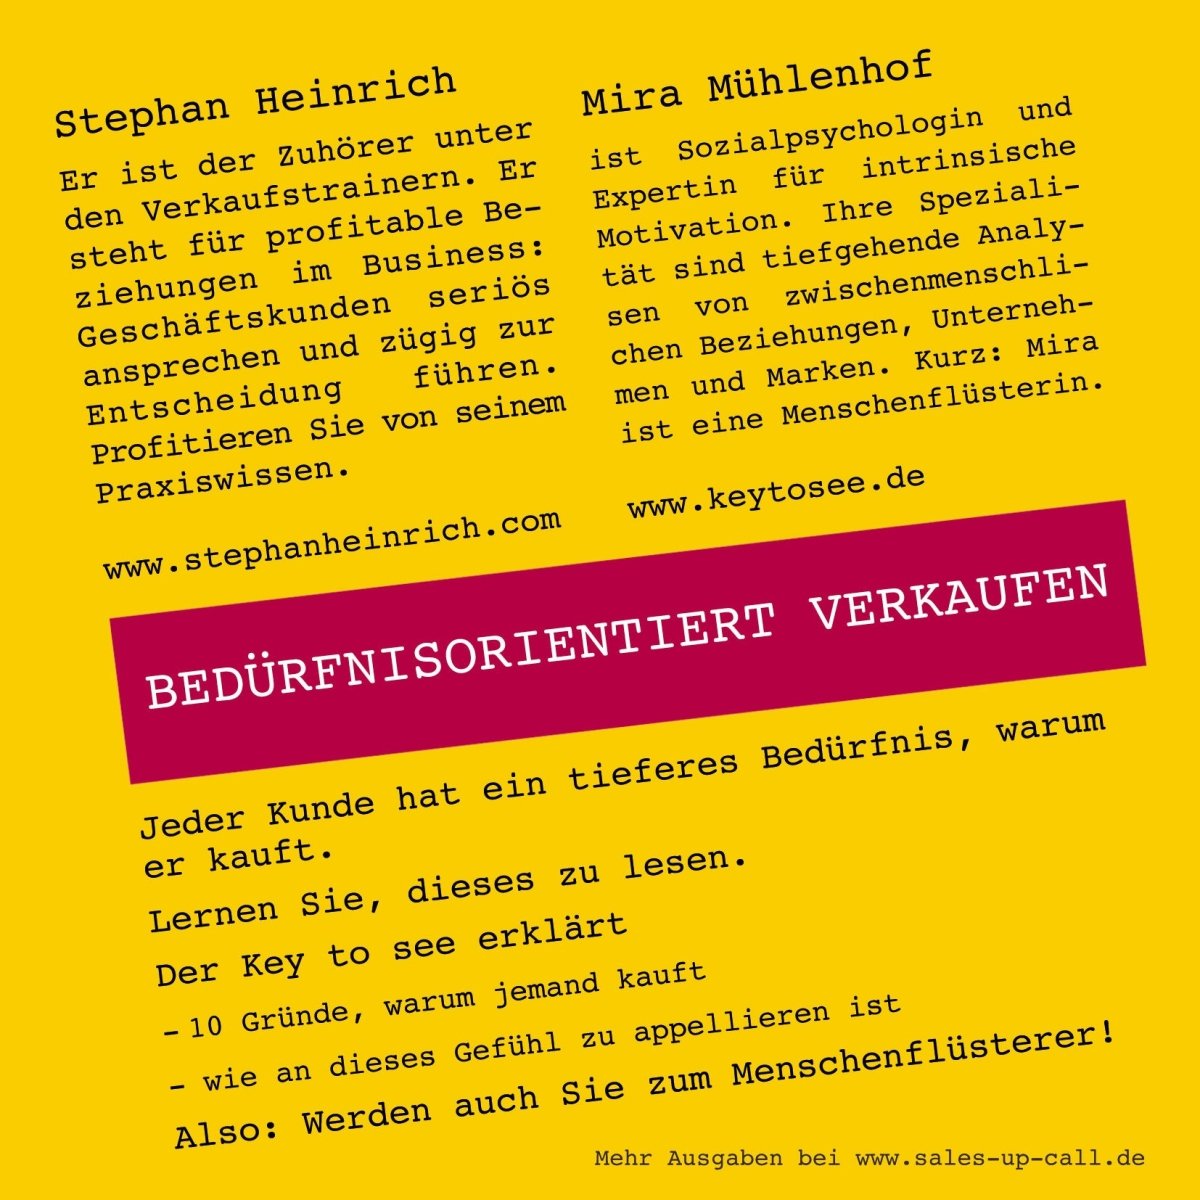 Bedürfnisorientiertes Verkaufen - Sales-up-Call - Stephan Heinrich